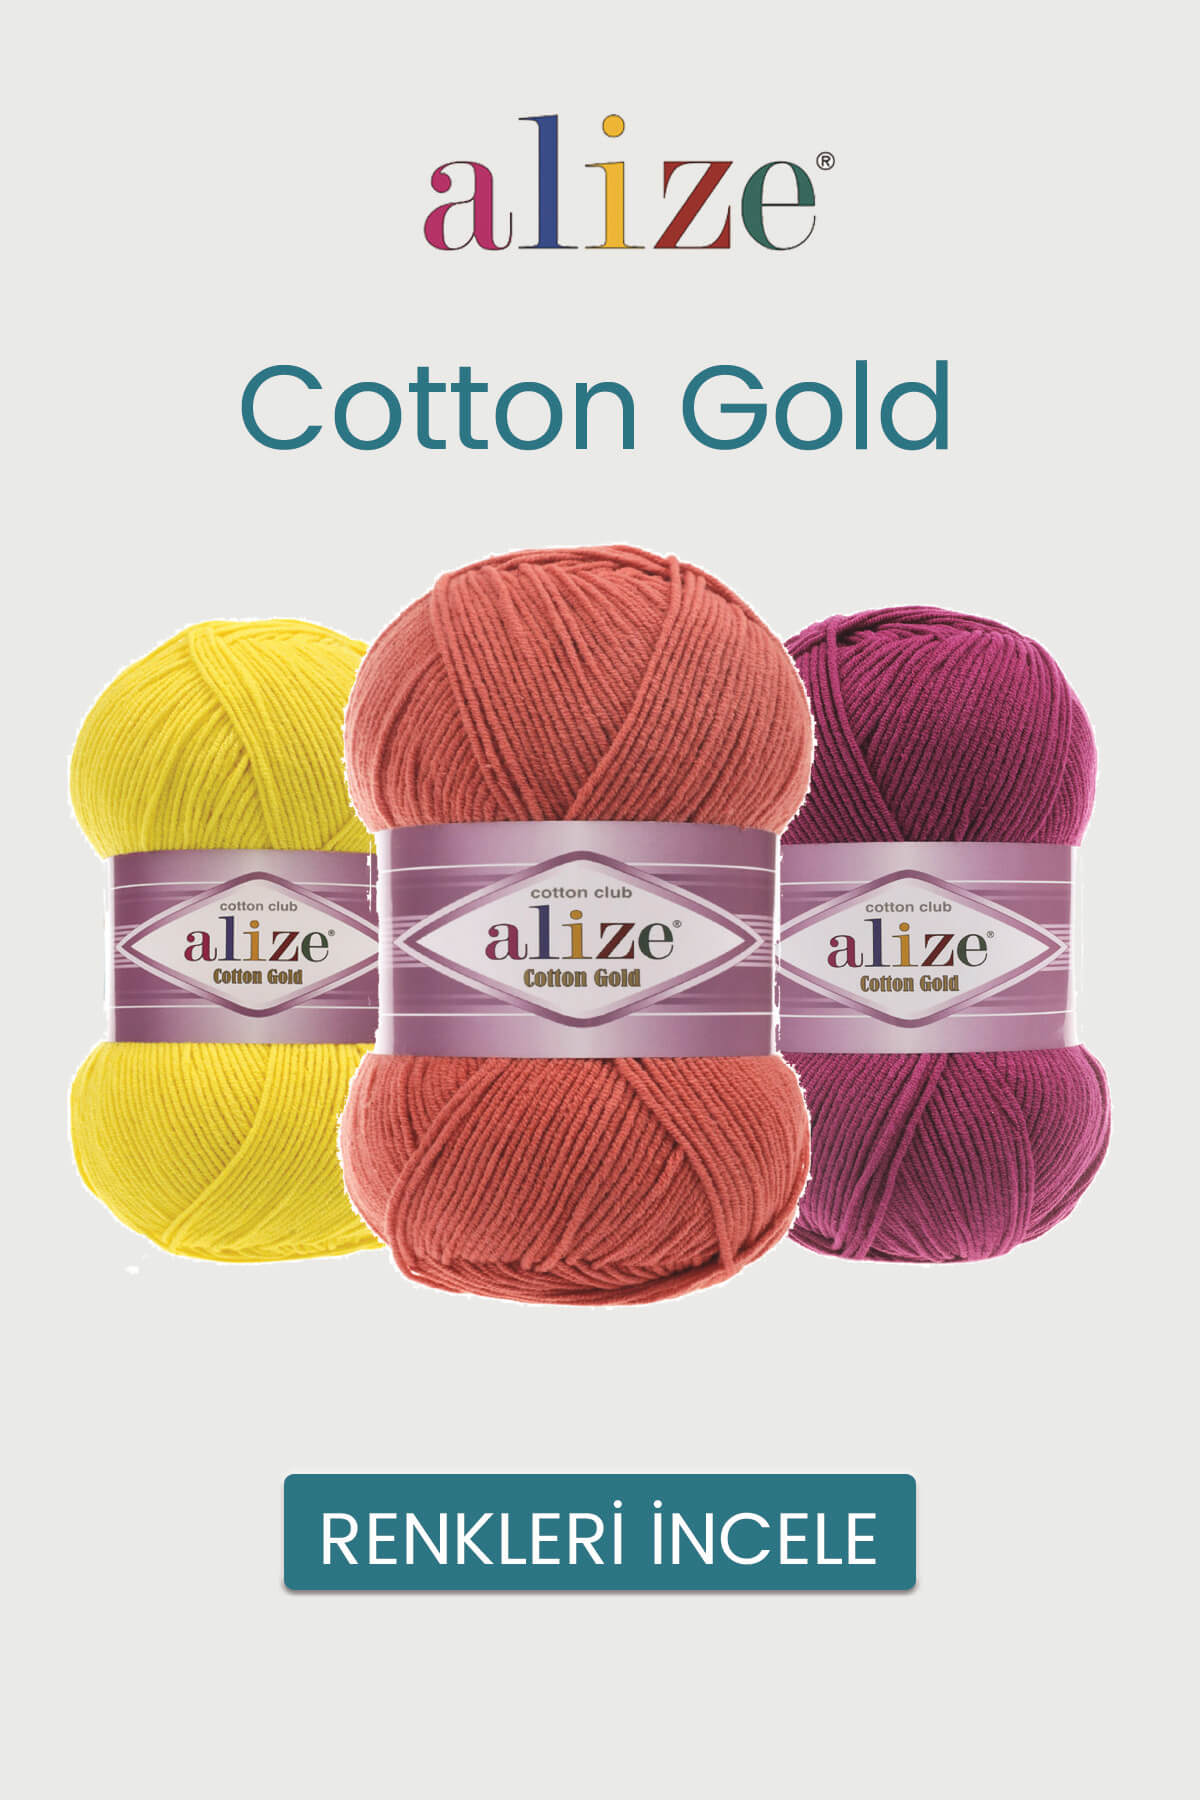 alize-cotton-gold-tekstilland